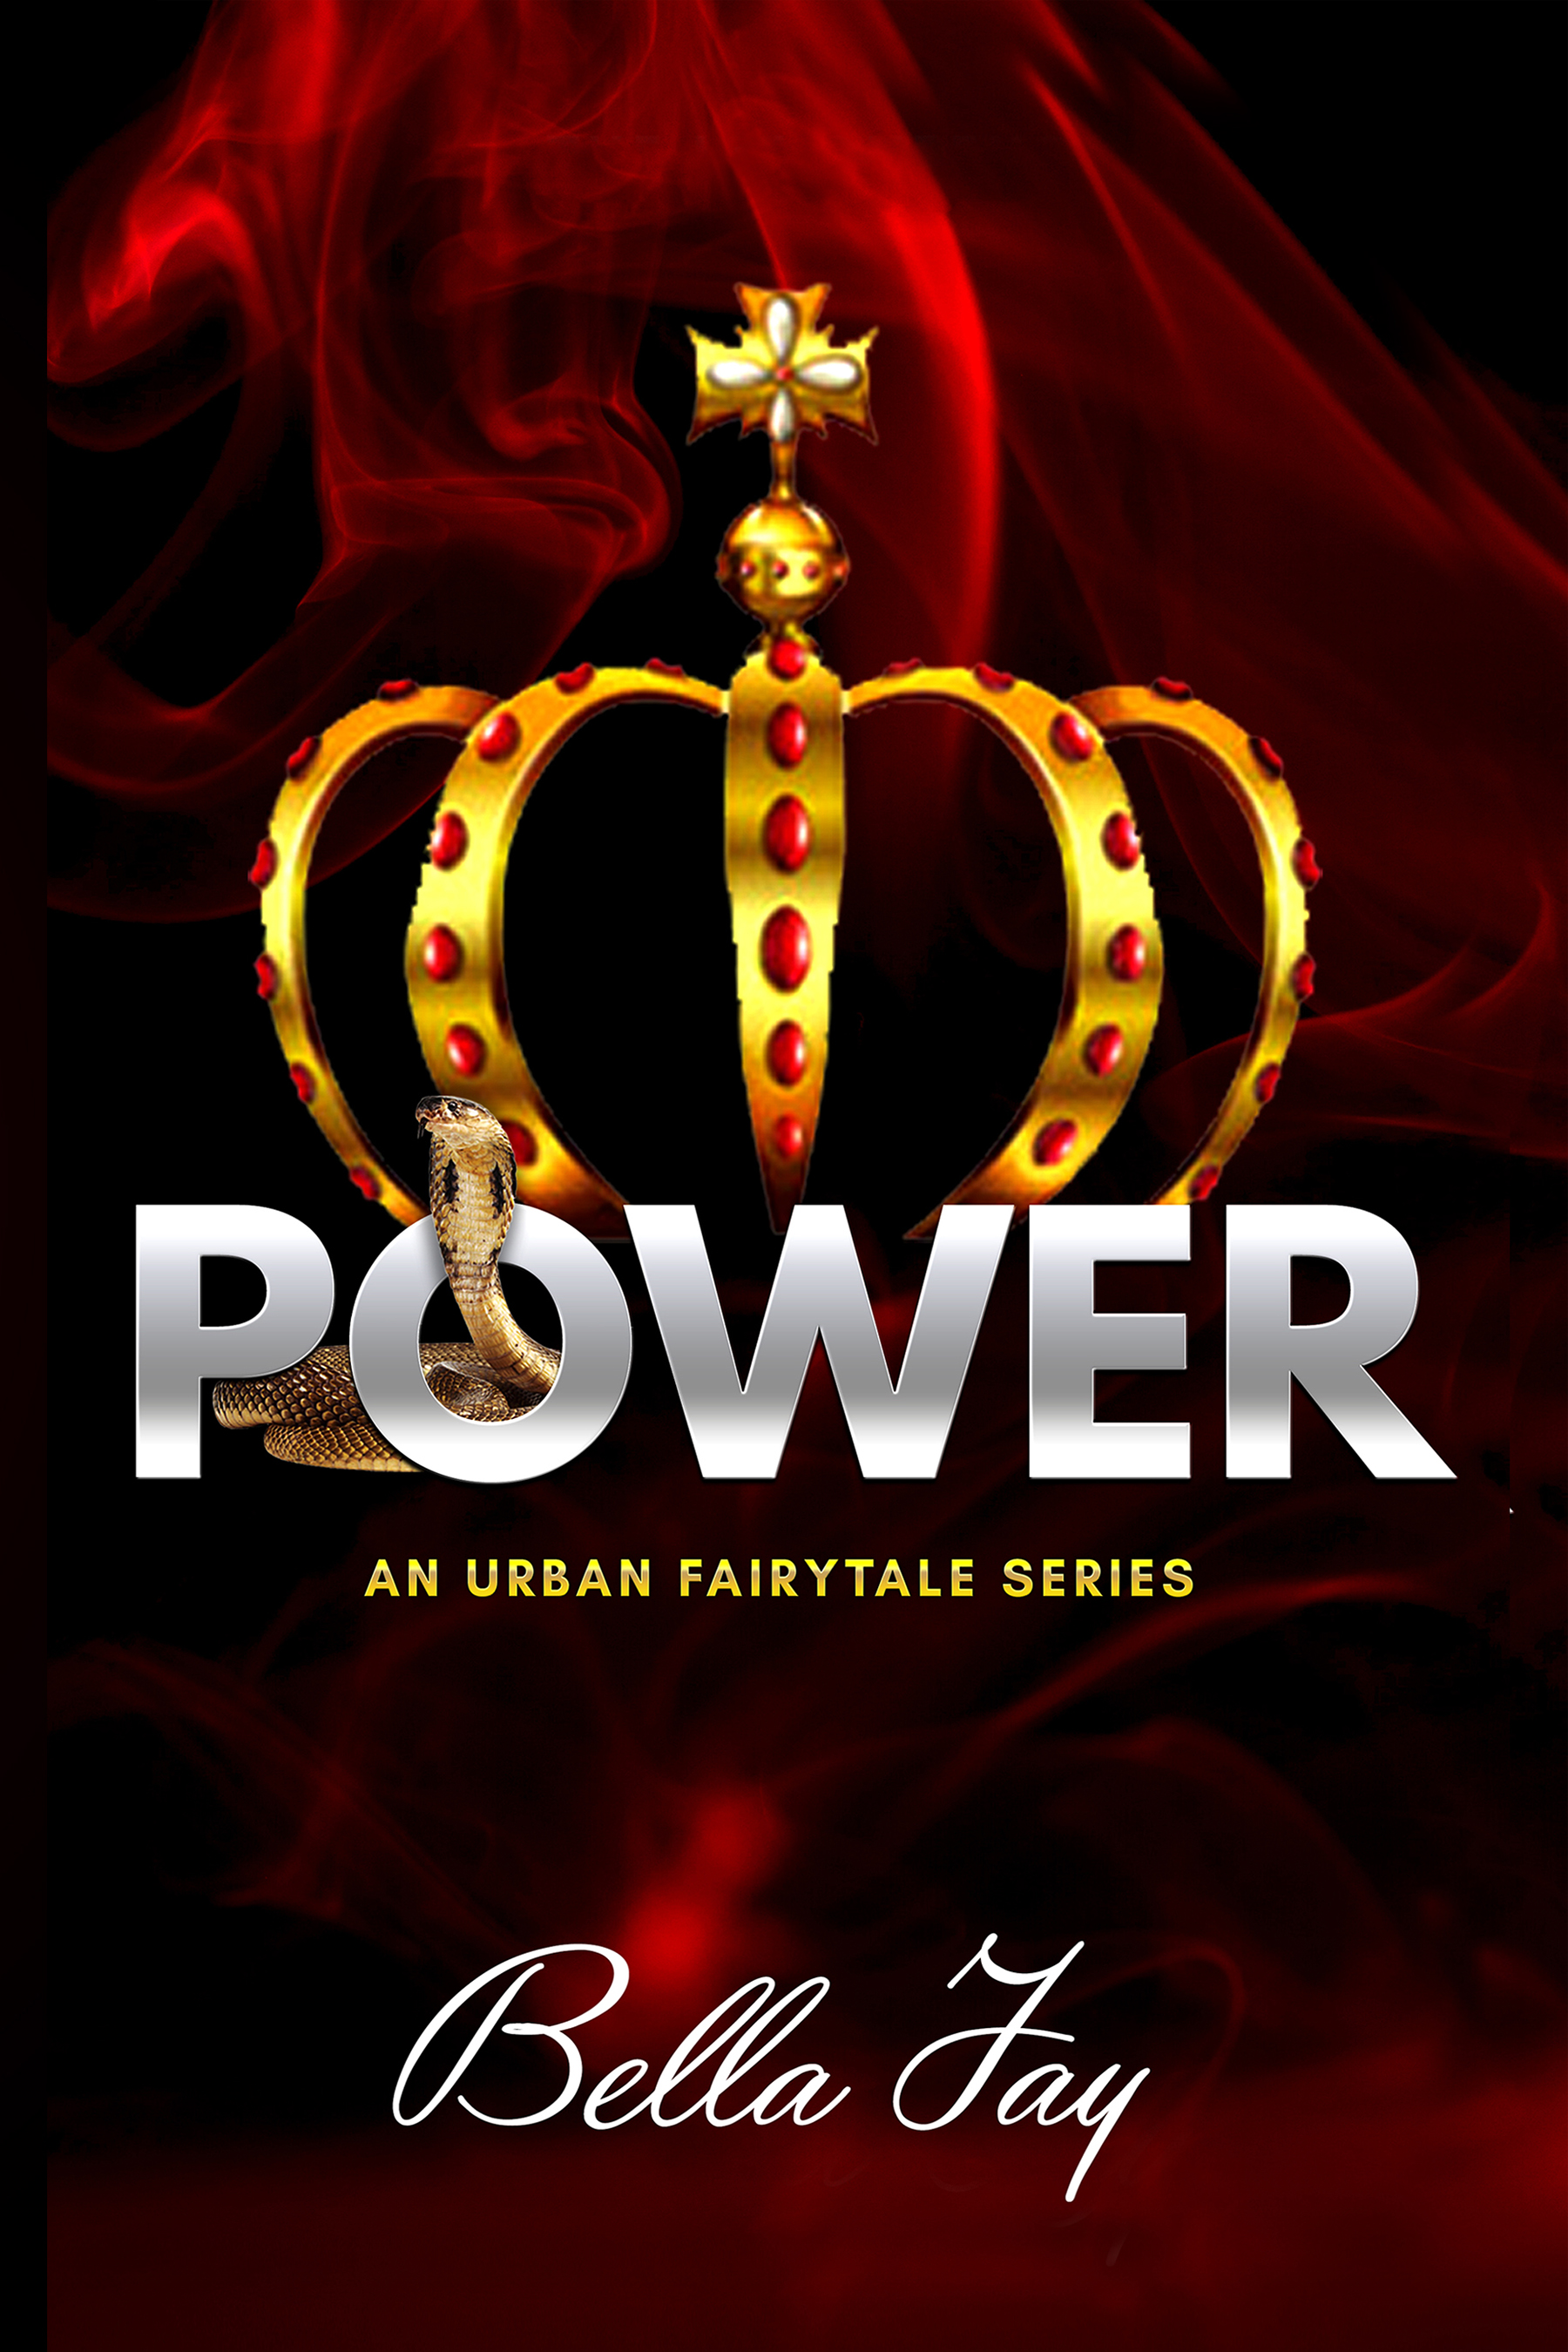 Power: An Urban Fairytale